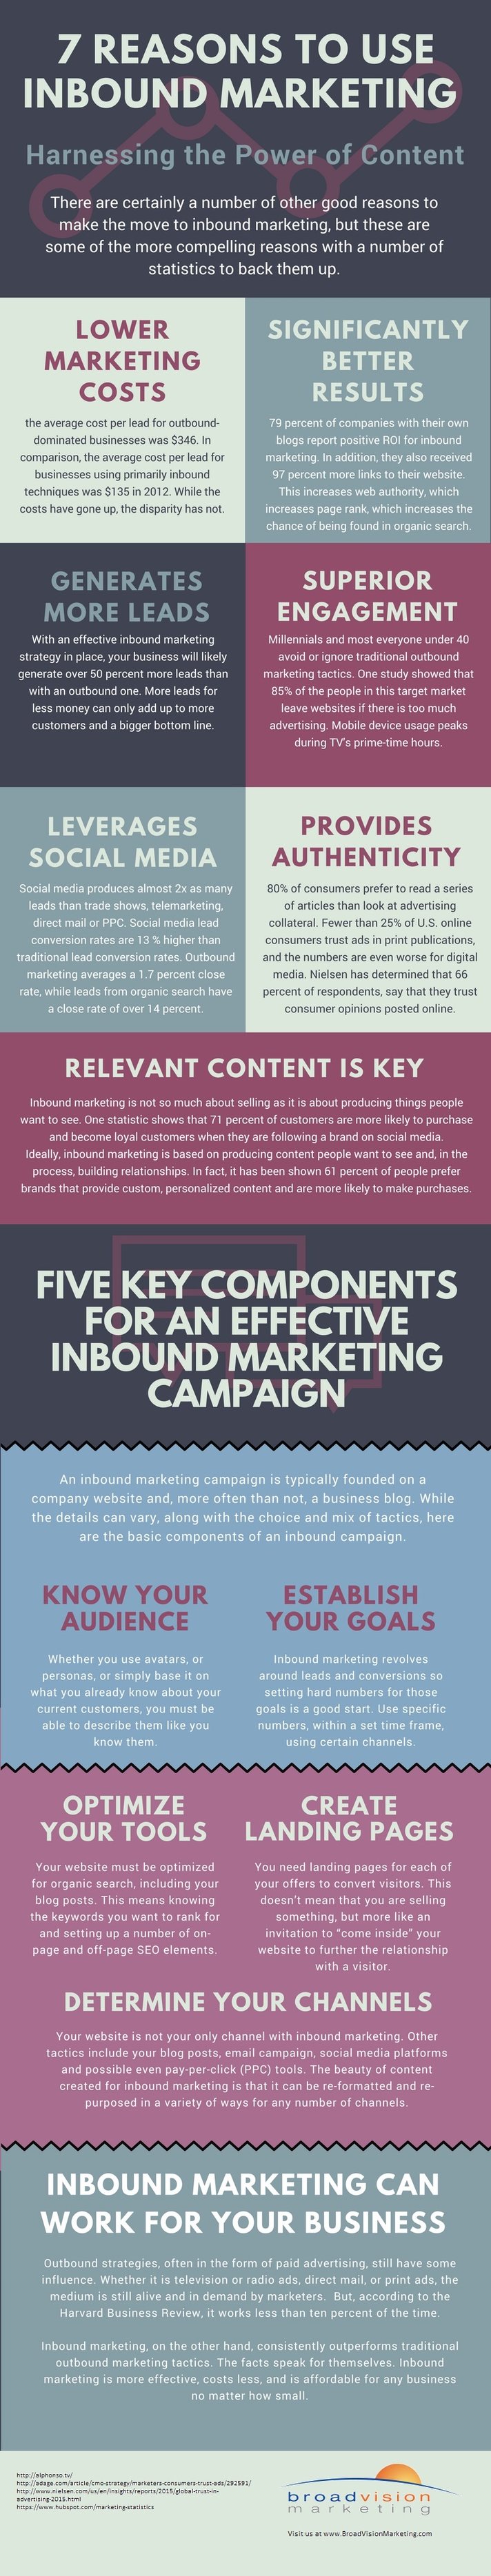 7-reasons-for-inbound-marketing.jpg